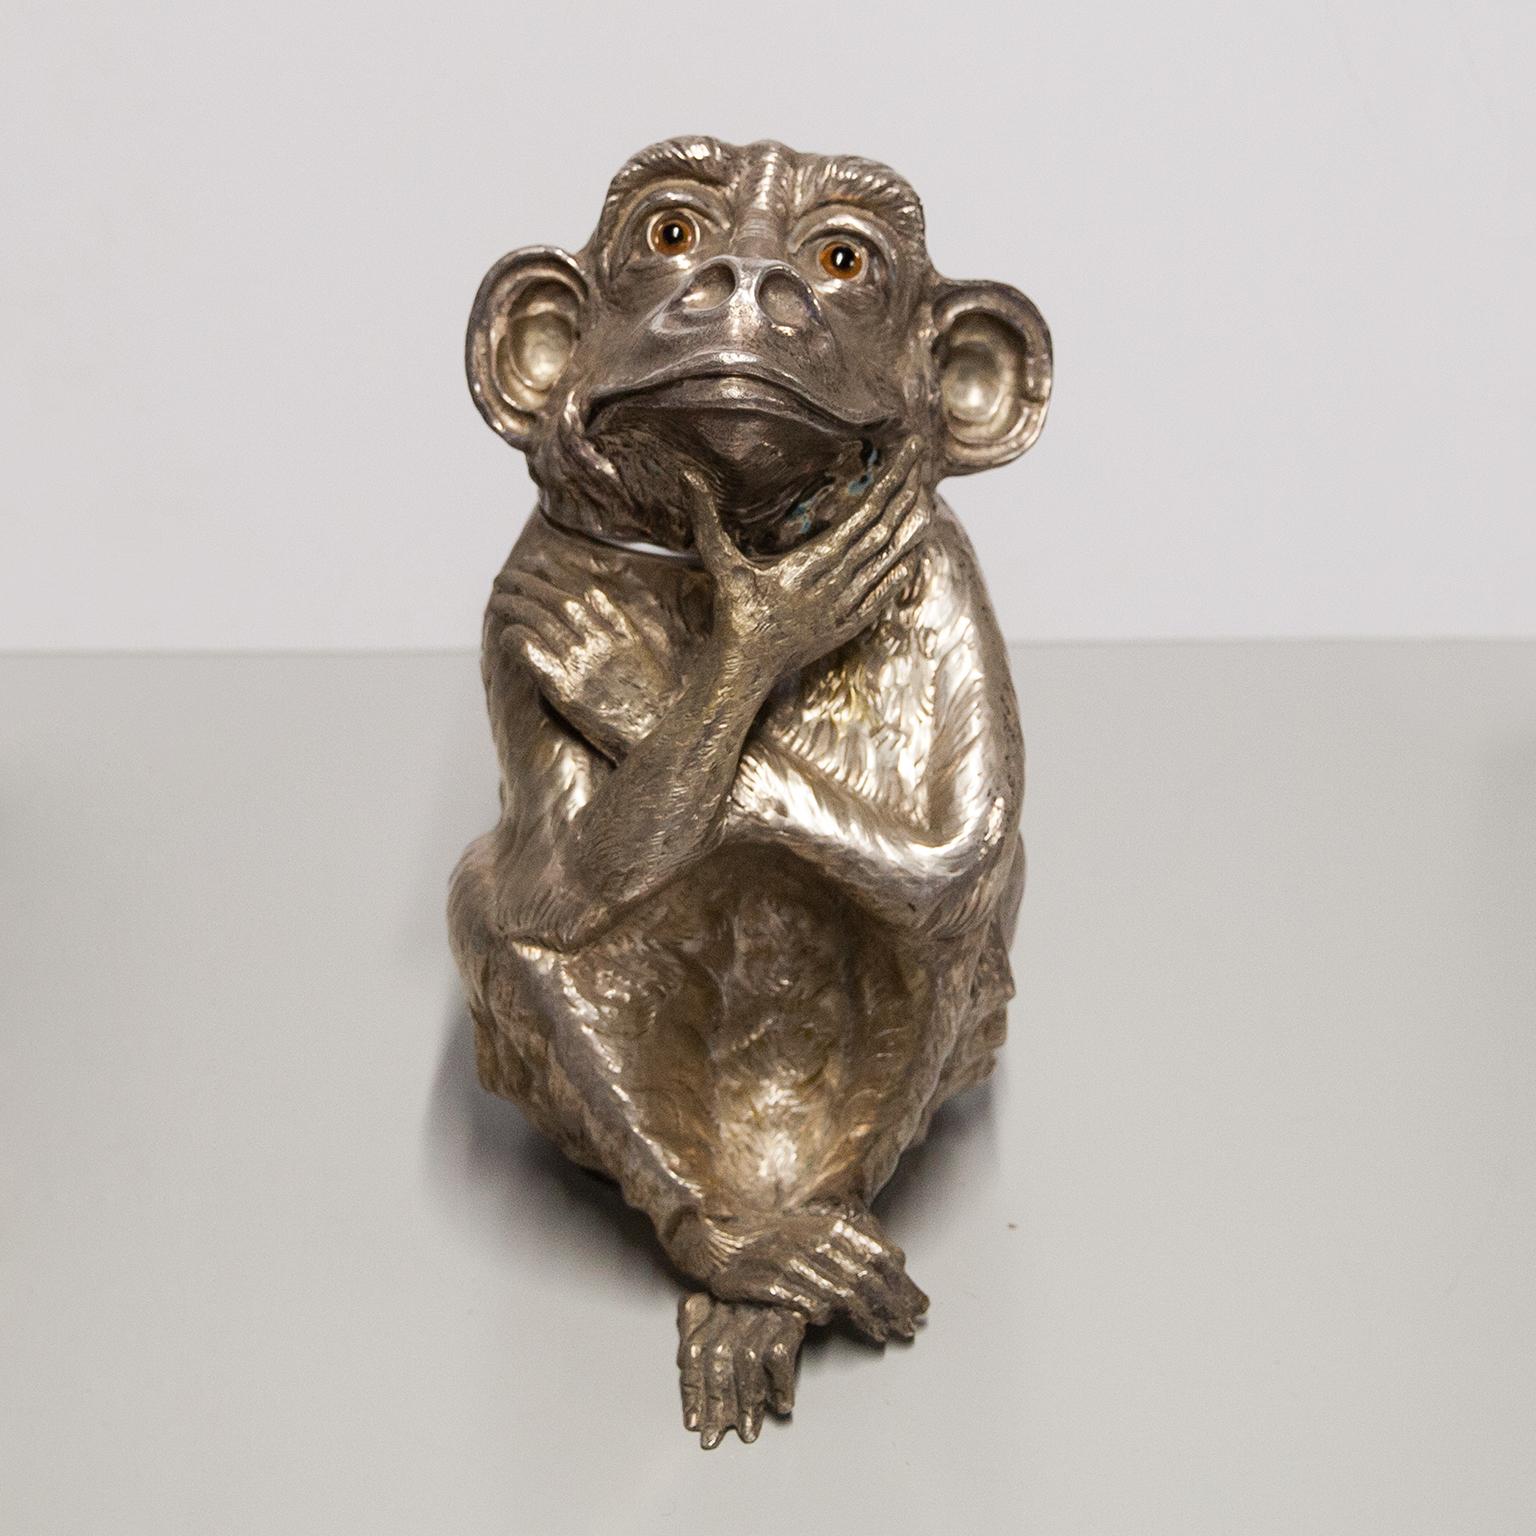 Franco Lapinis seltene und berühmte Vintage-Skulptur Monkey Weinkühler oder Eiskübel ist ganz aus versilbertem Metall gefertigt und seine Oberfläche ist leicht strukturiert, um ihm ein organisches Gefühl zu geben, neue Kunststoffeinlage innen.
Ob